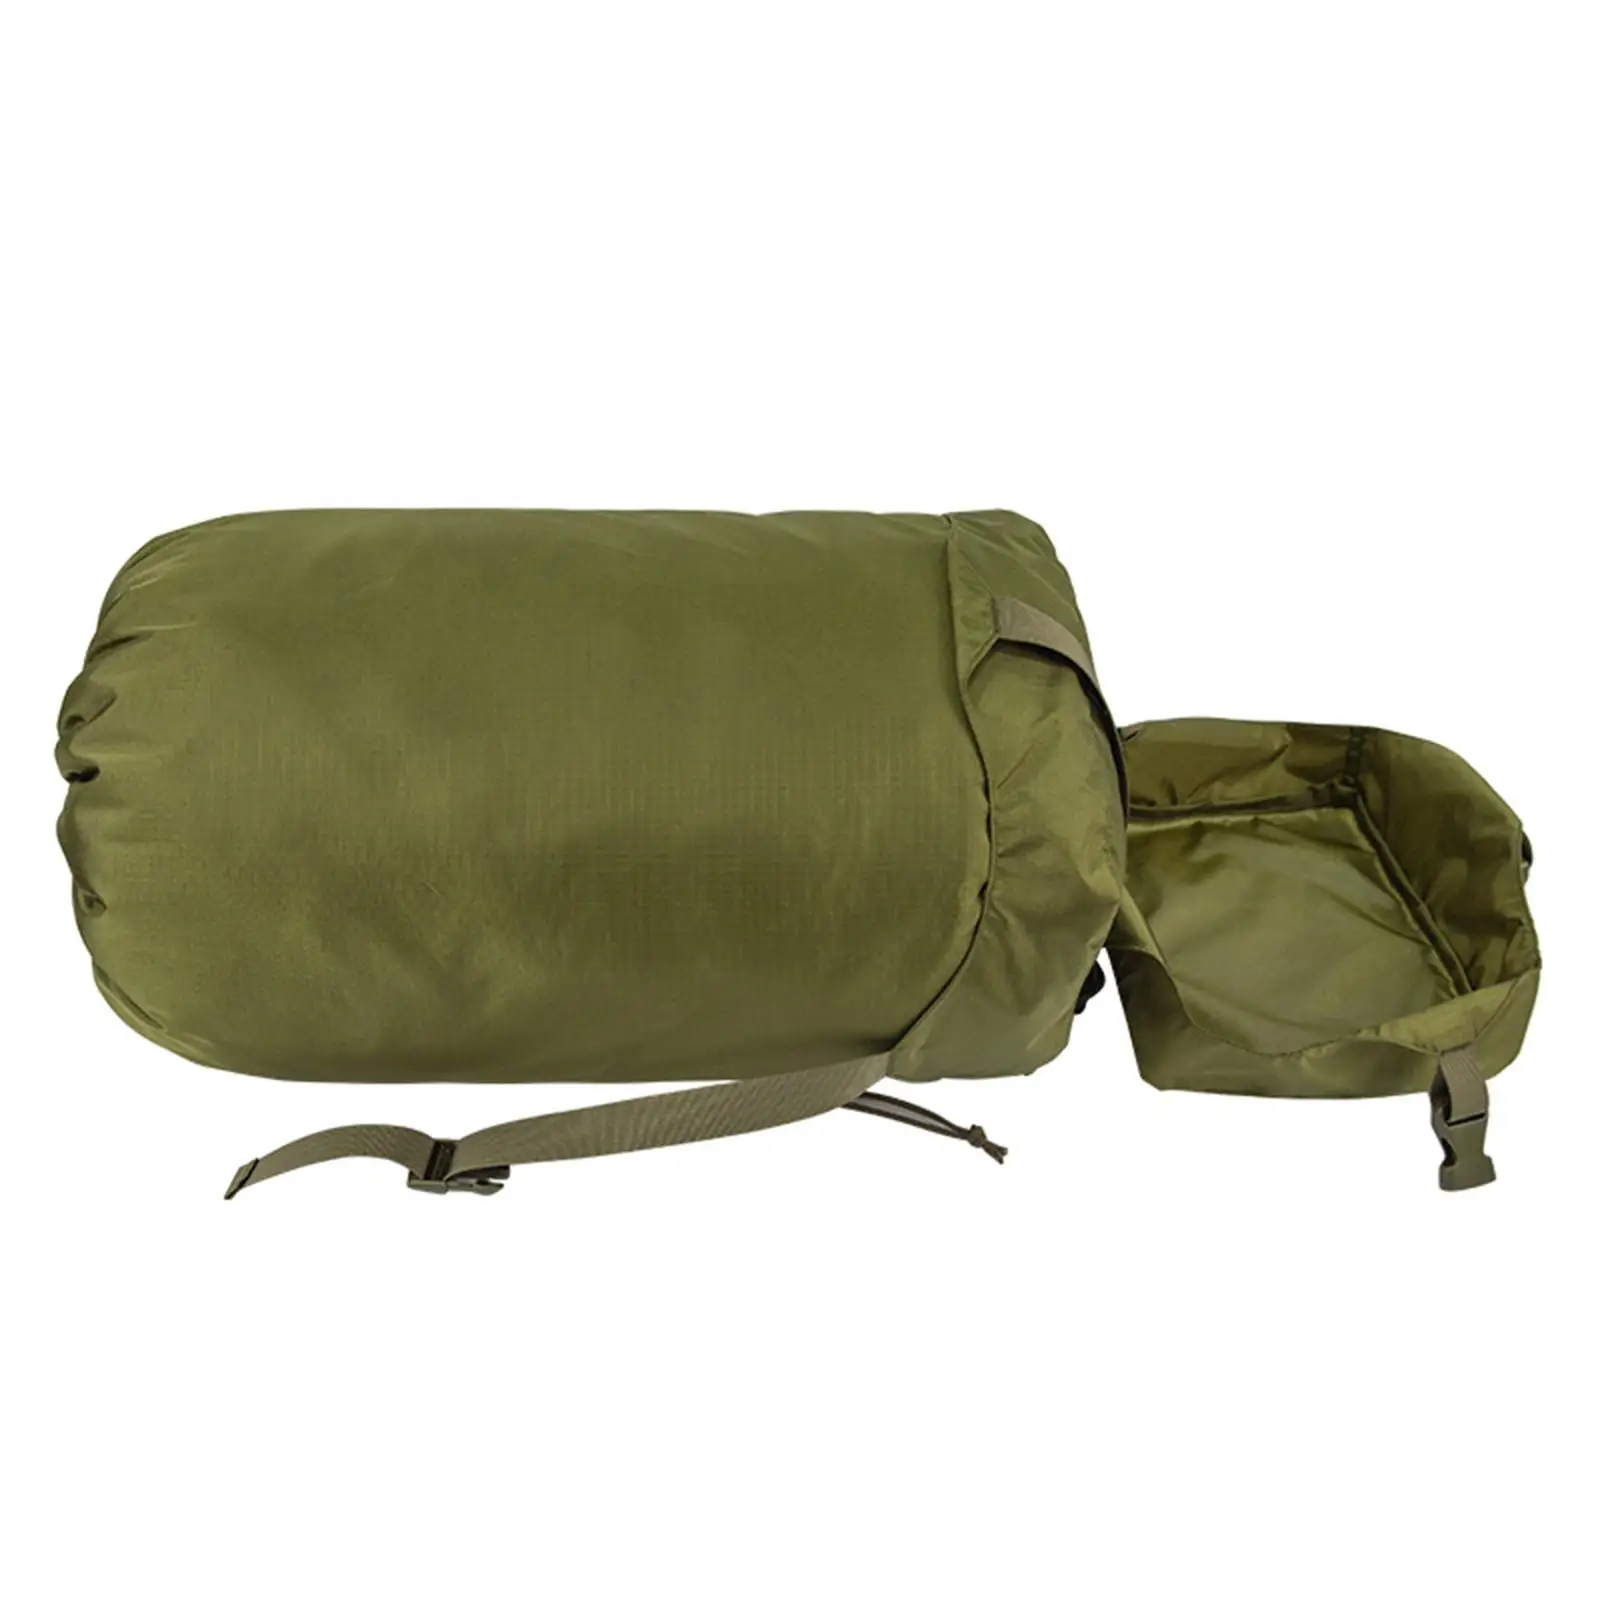 Compression Stuff Sack, Sleeping Bag Stuff Sack, Compression Bag Storage Bag for Travel